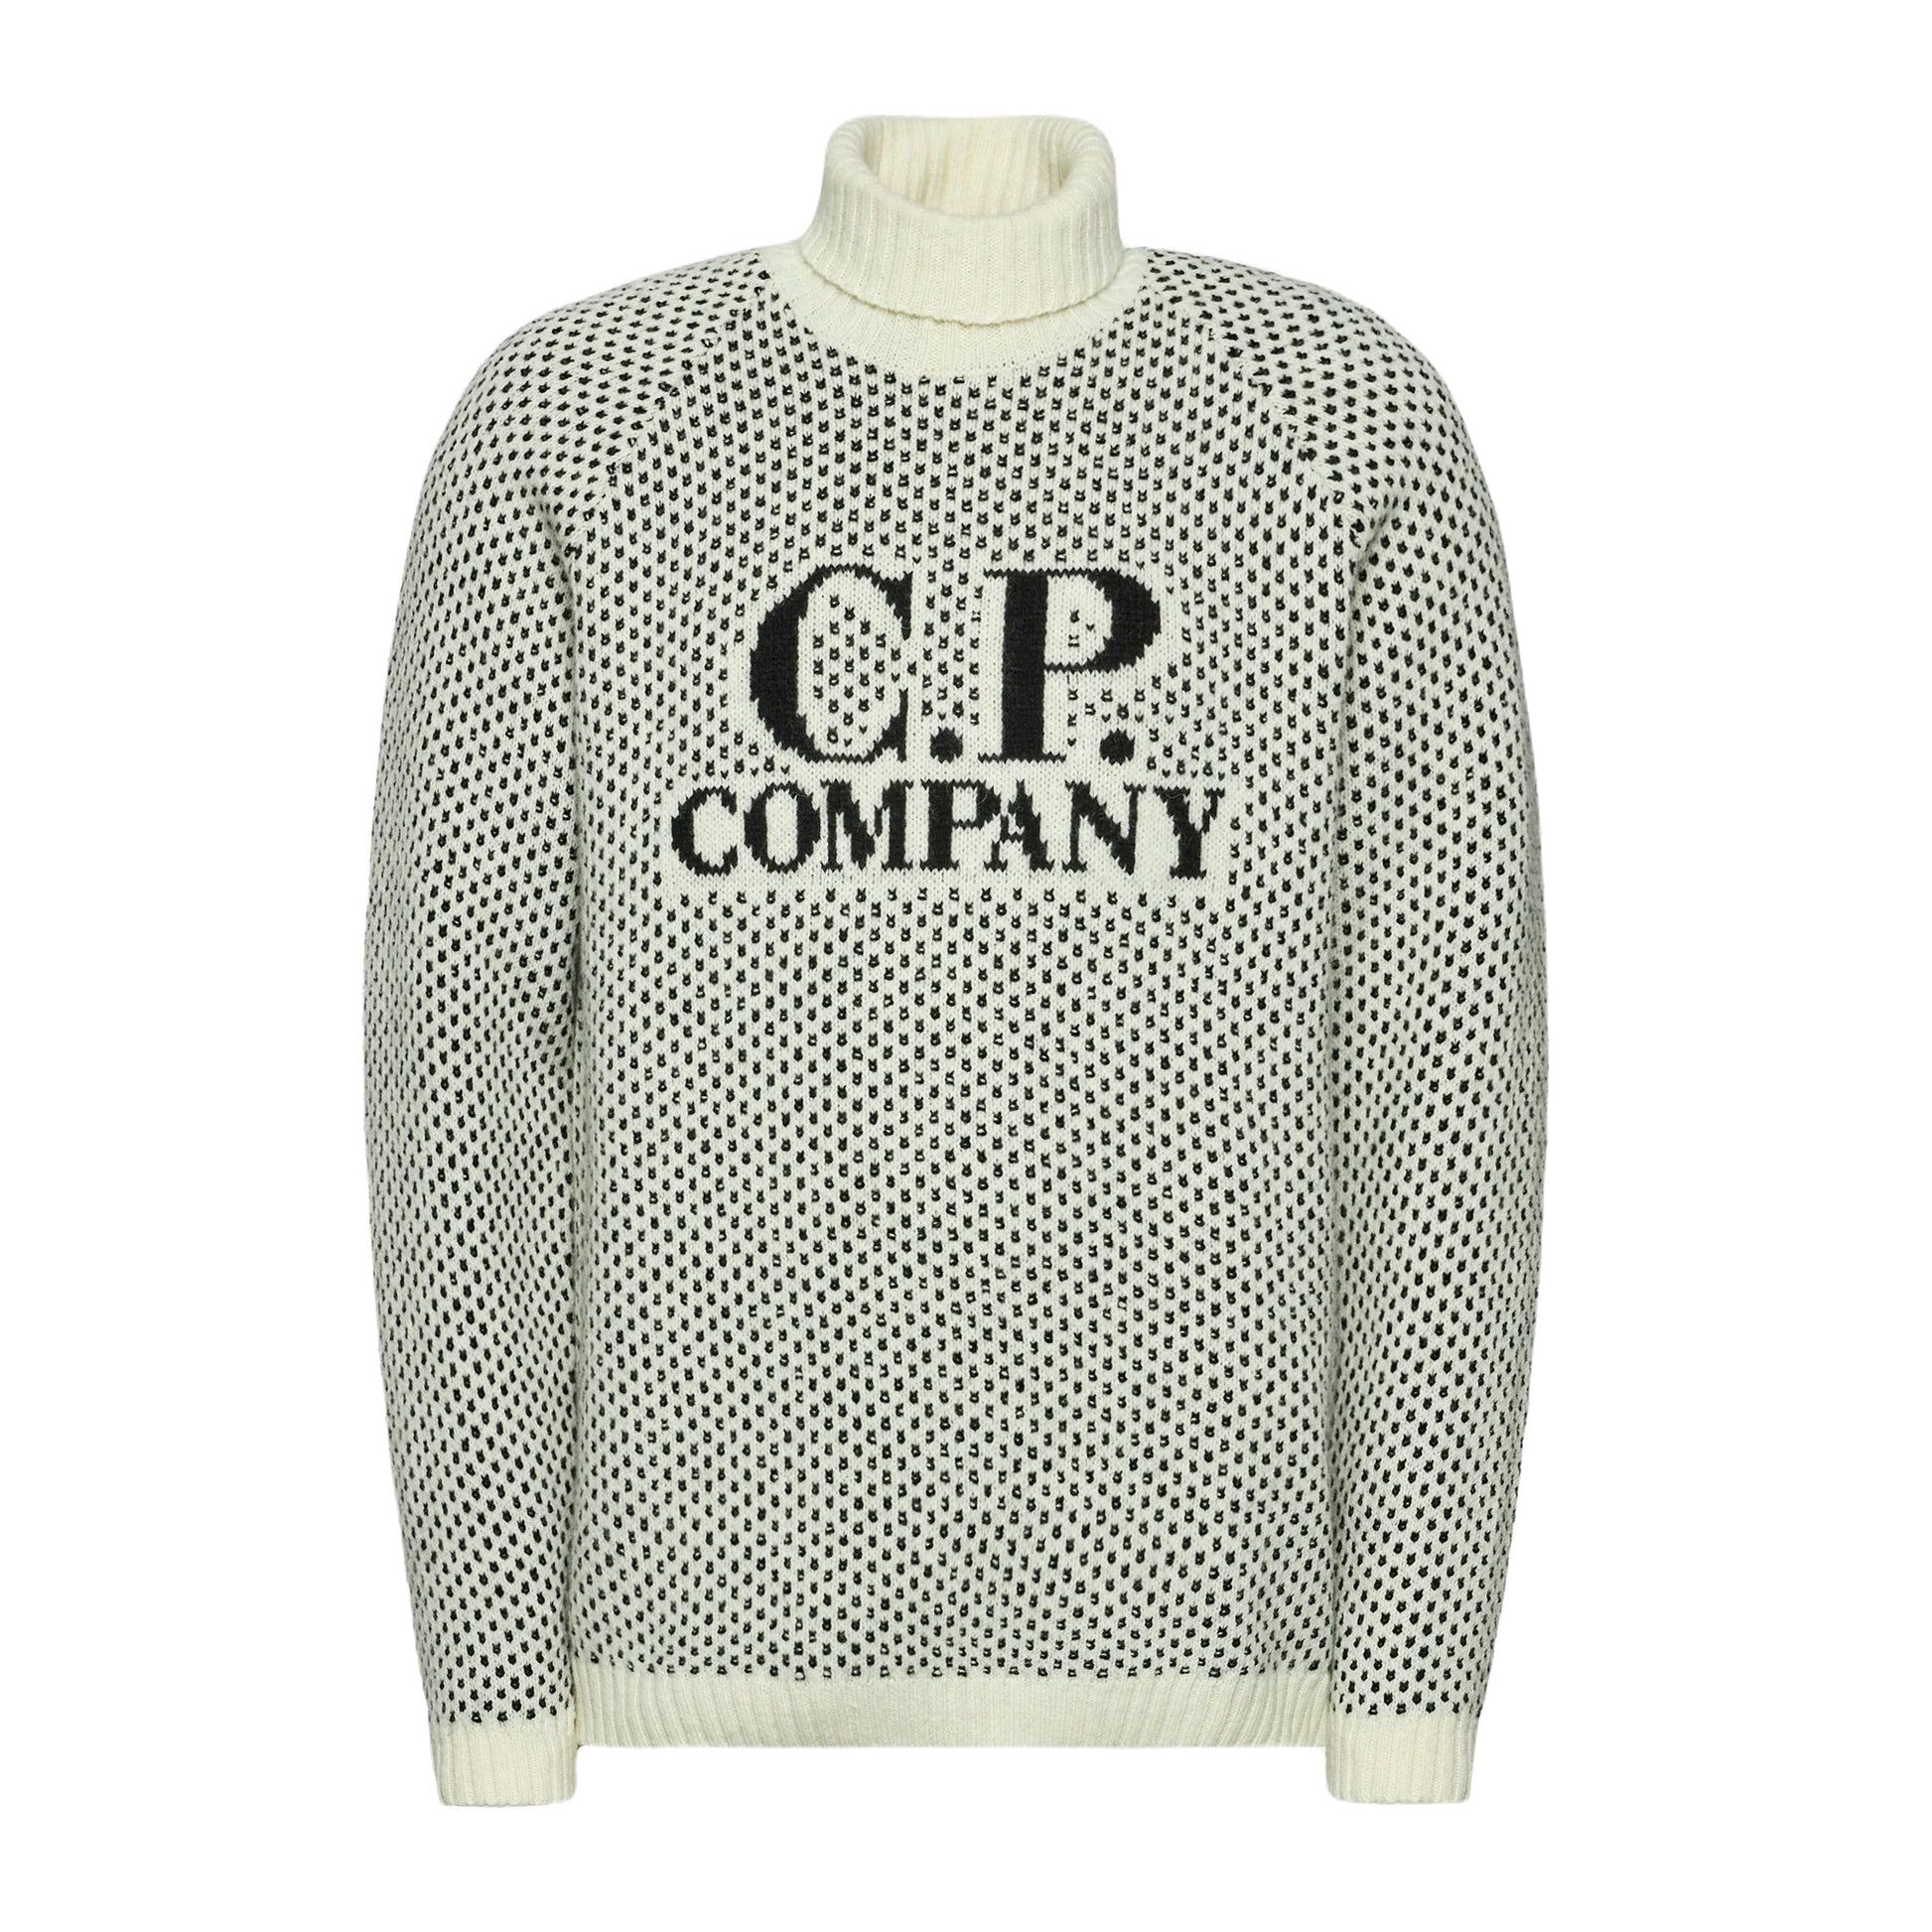 C.P. Company Wool Jacquard Roll Neck Knit - V01 White - Escape Menswear